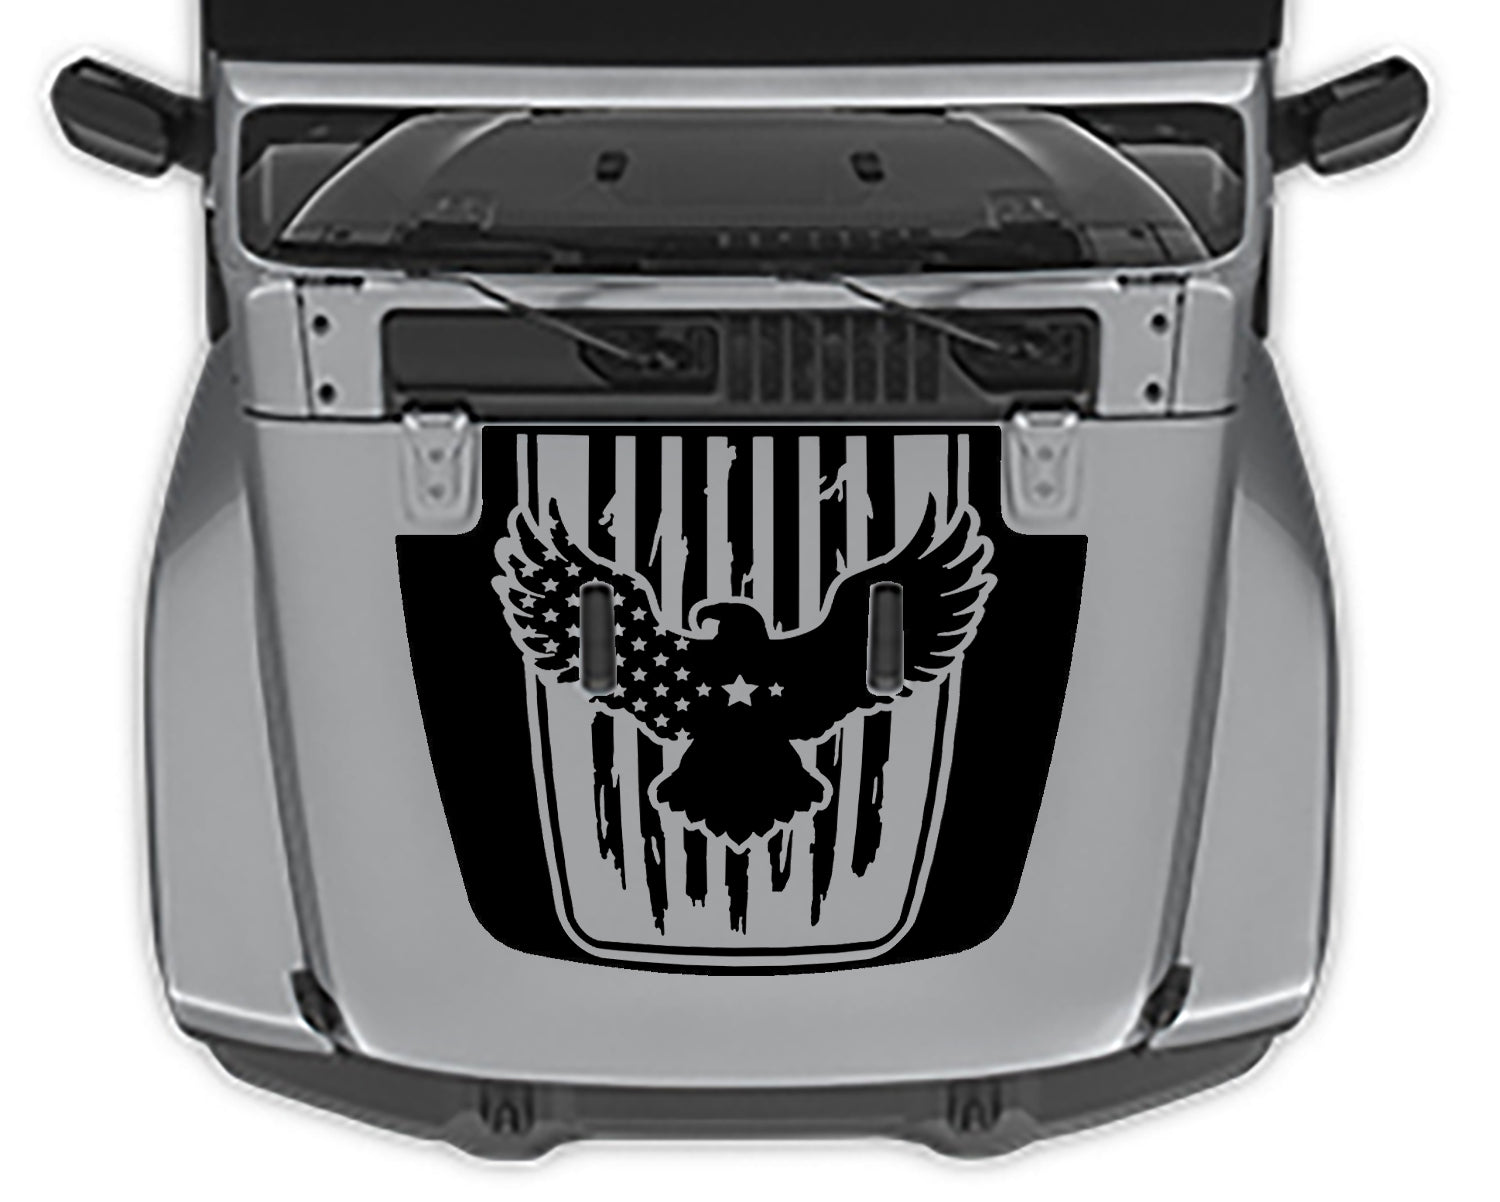 Eagle flag hood decal for jeep wrangler jl black